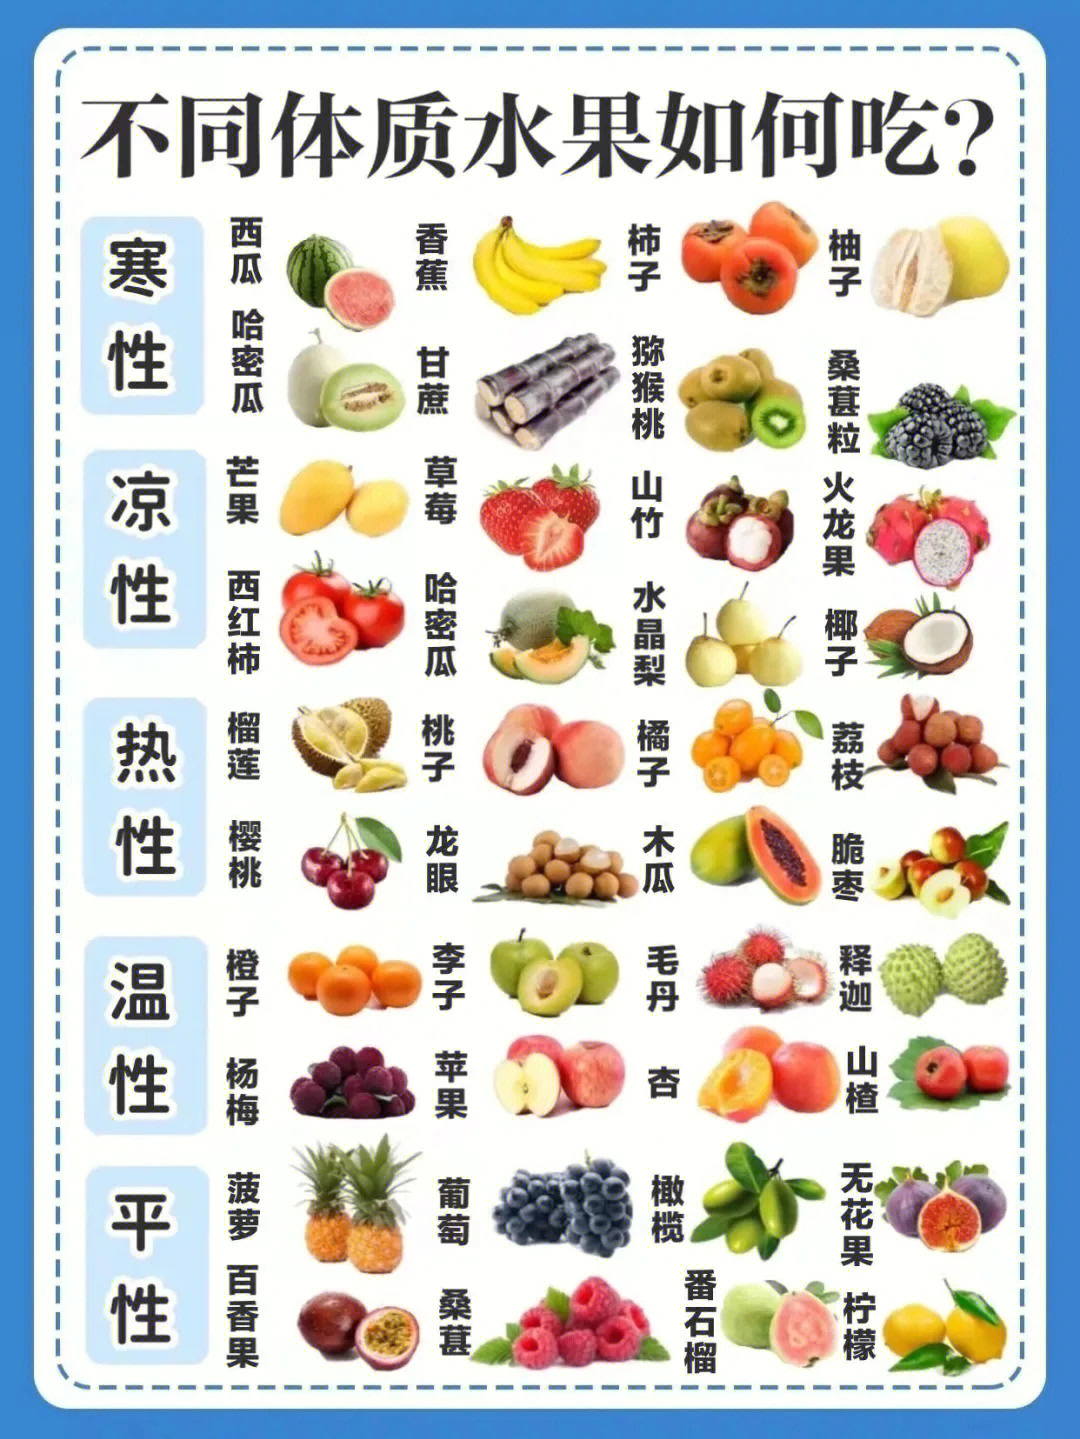 不同体质水果如何吃?寒性,凉性,温性,热性,平性